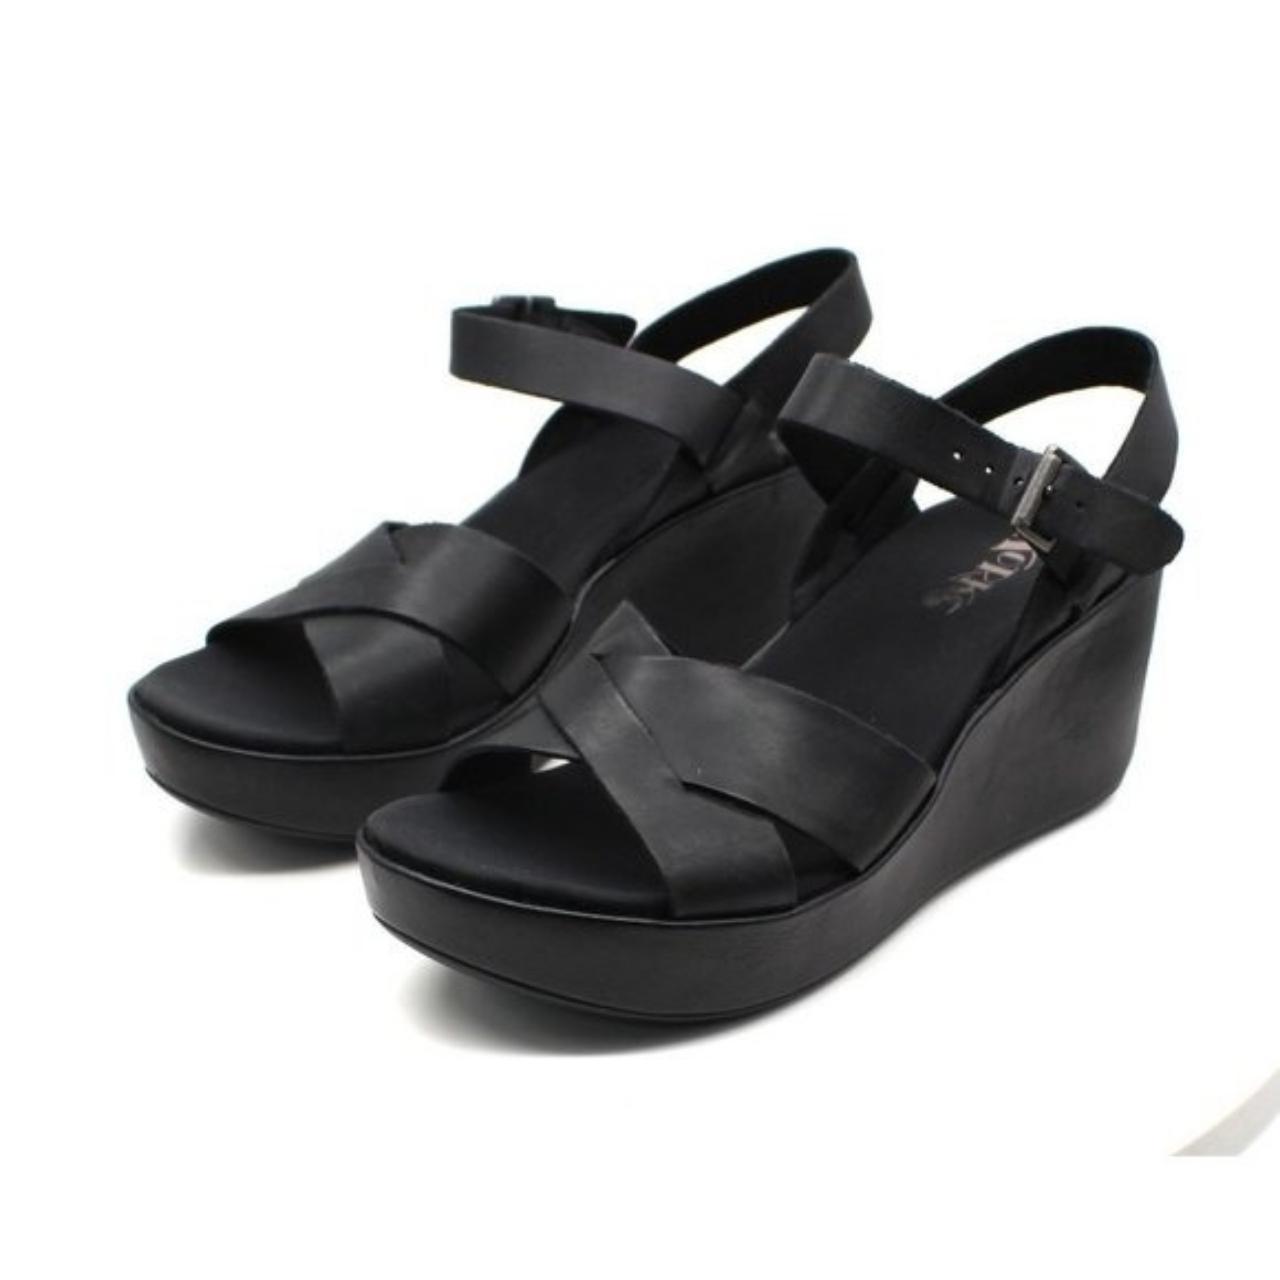 Product Image 3 - Korks Women's Denica Sandals Women's